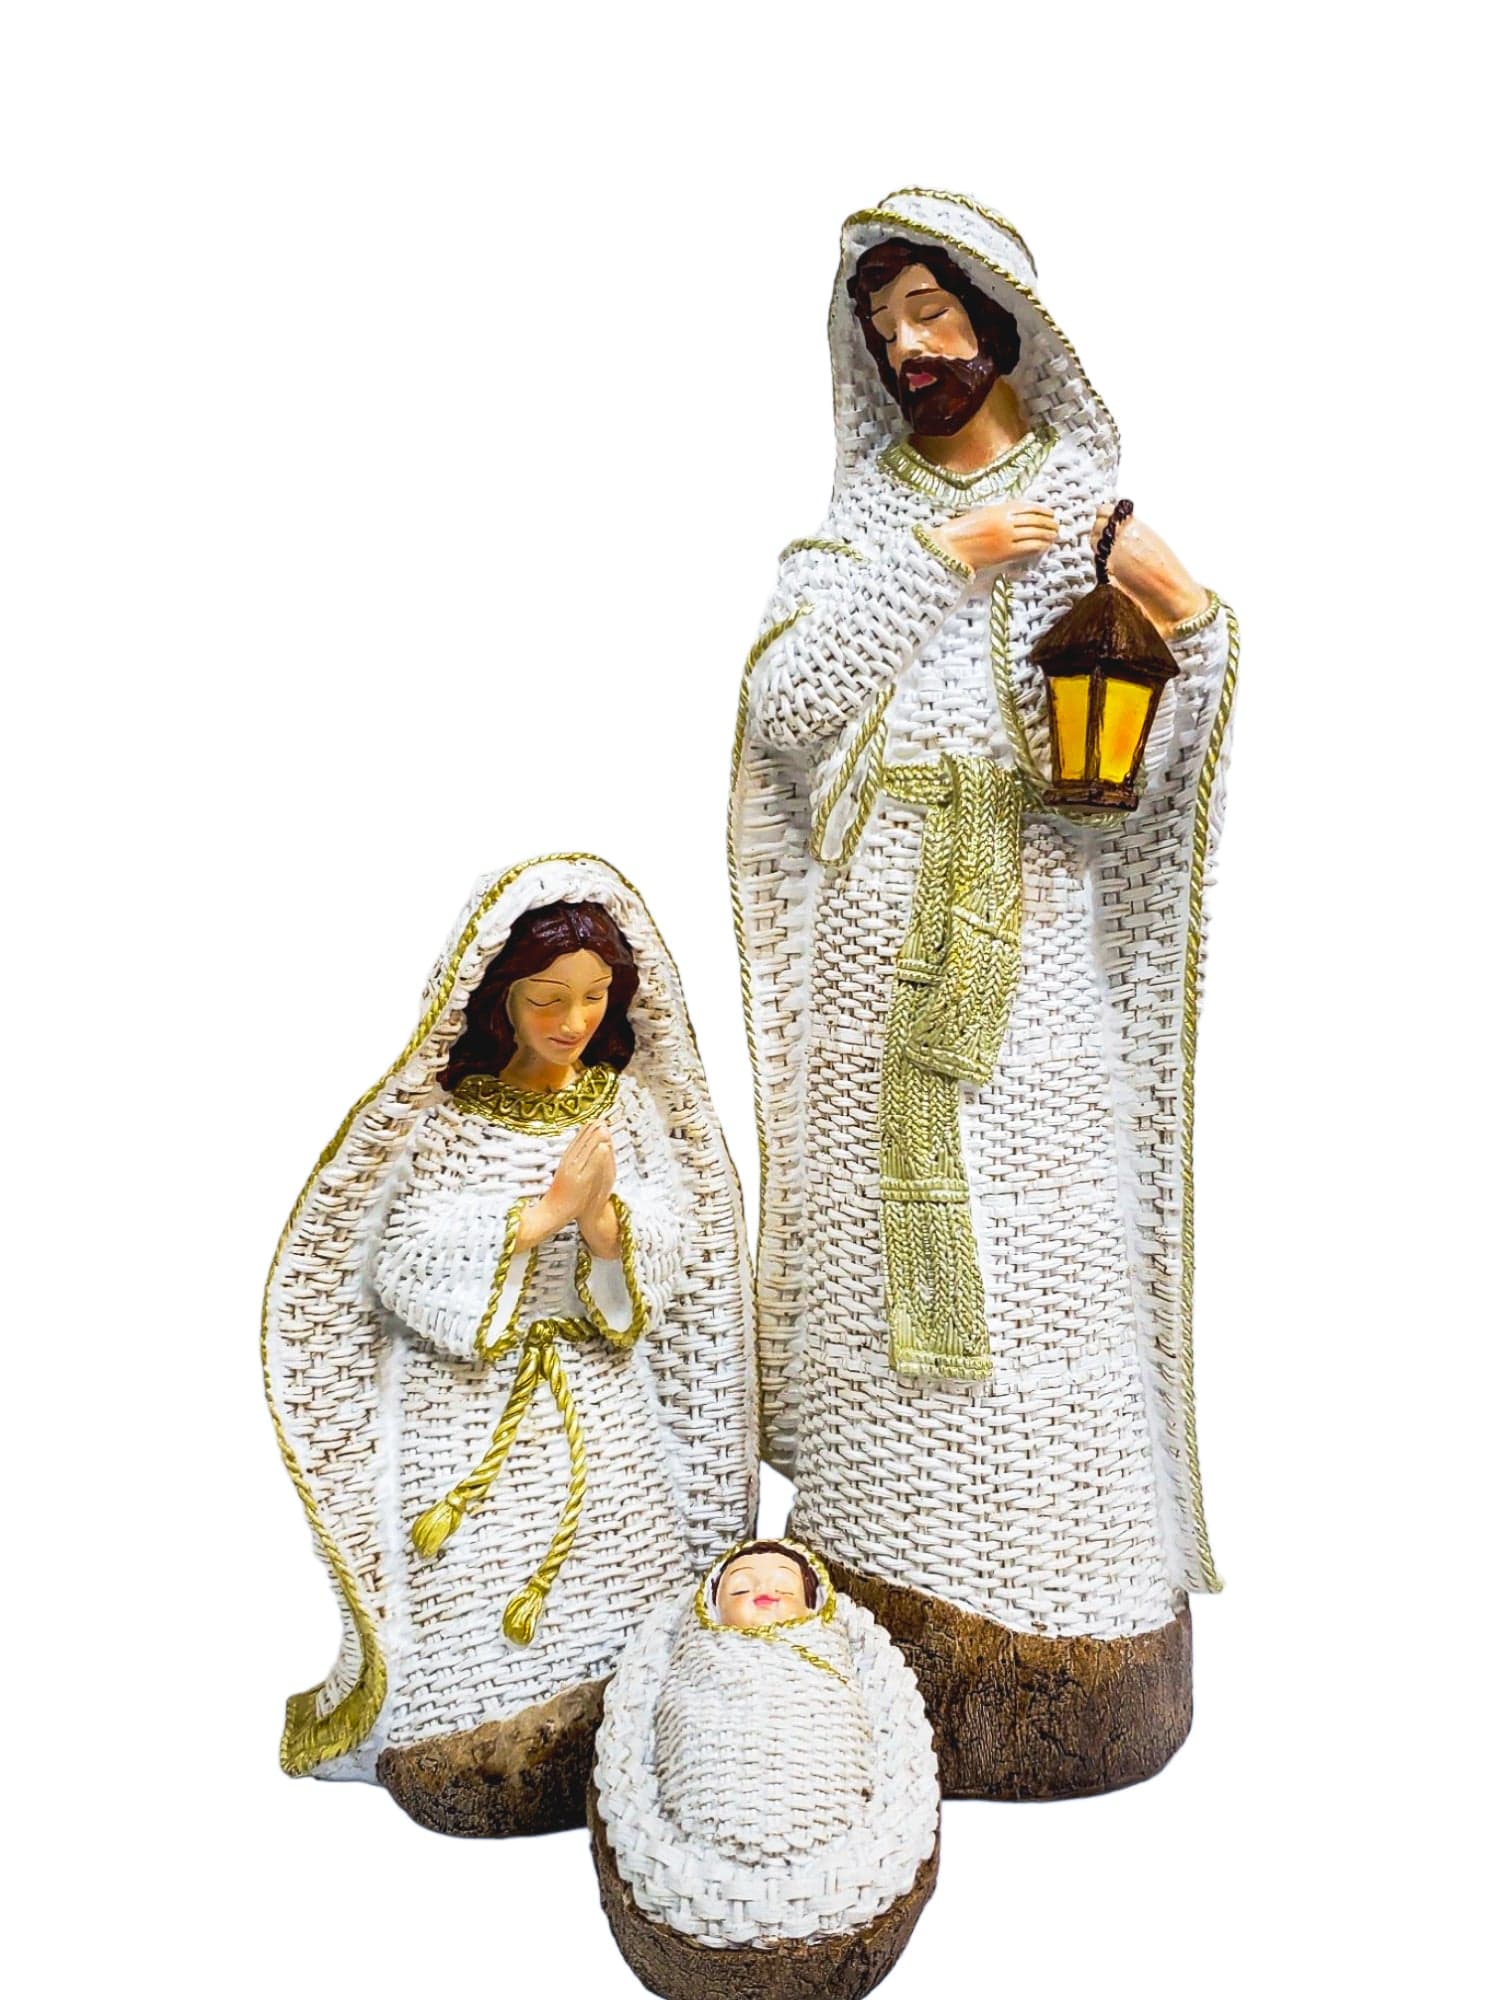 Sagrada Família em Resina com Vestes Brancas 3 Peças-TerraCotta Arte Sacra